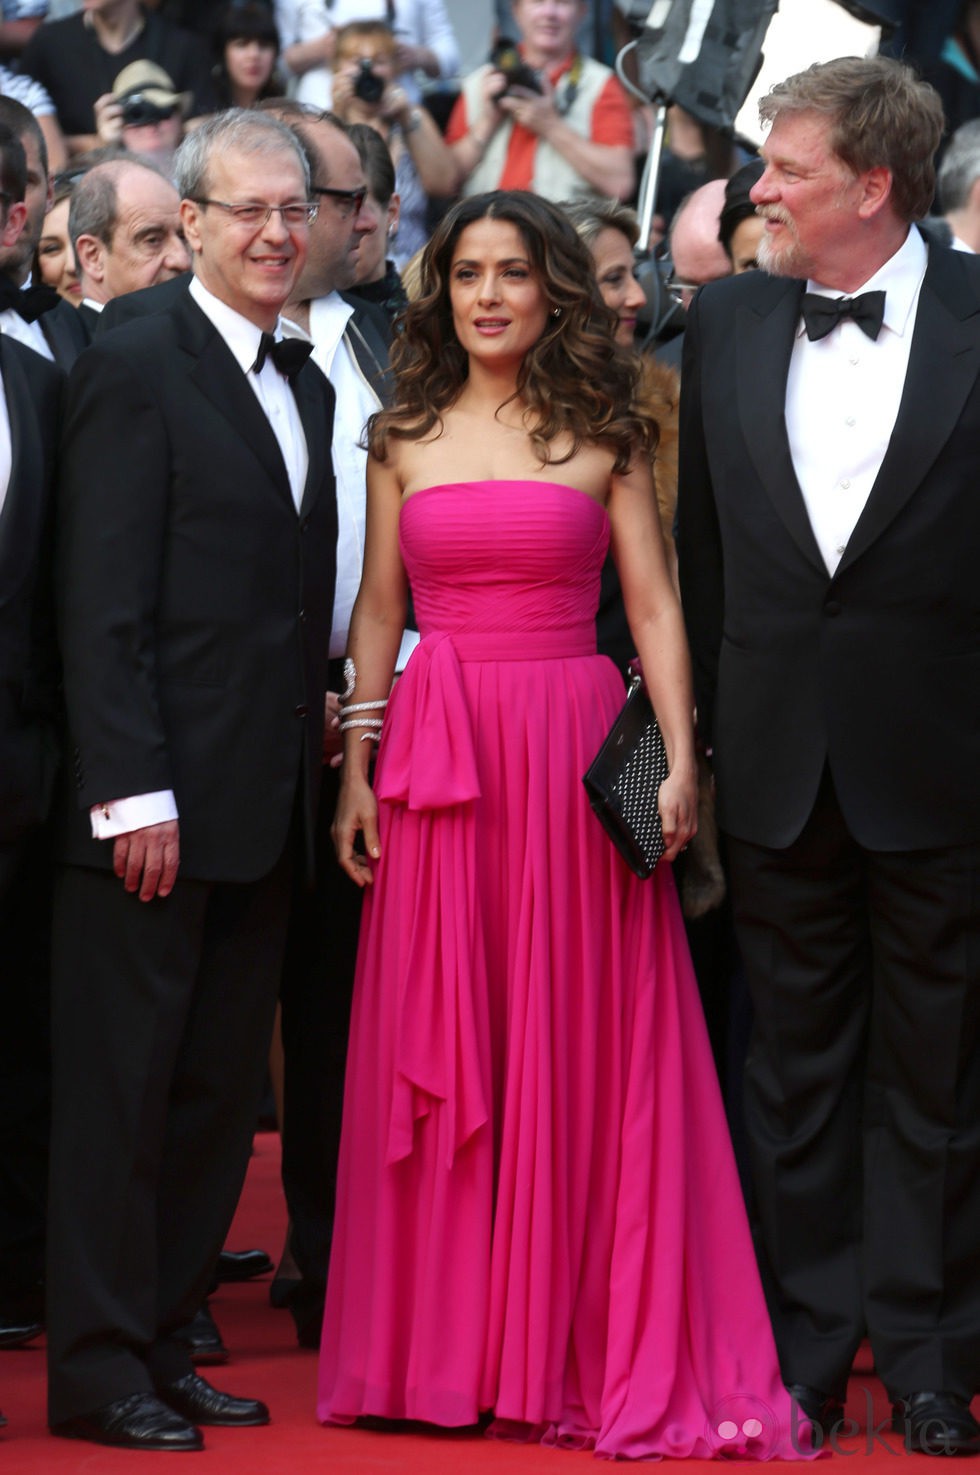 Salma Hayek en la alfombra roja del Festival de Cannes 2014